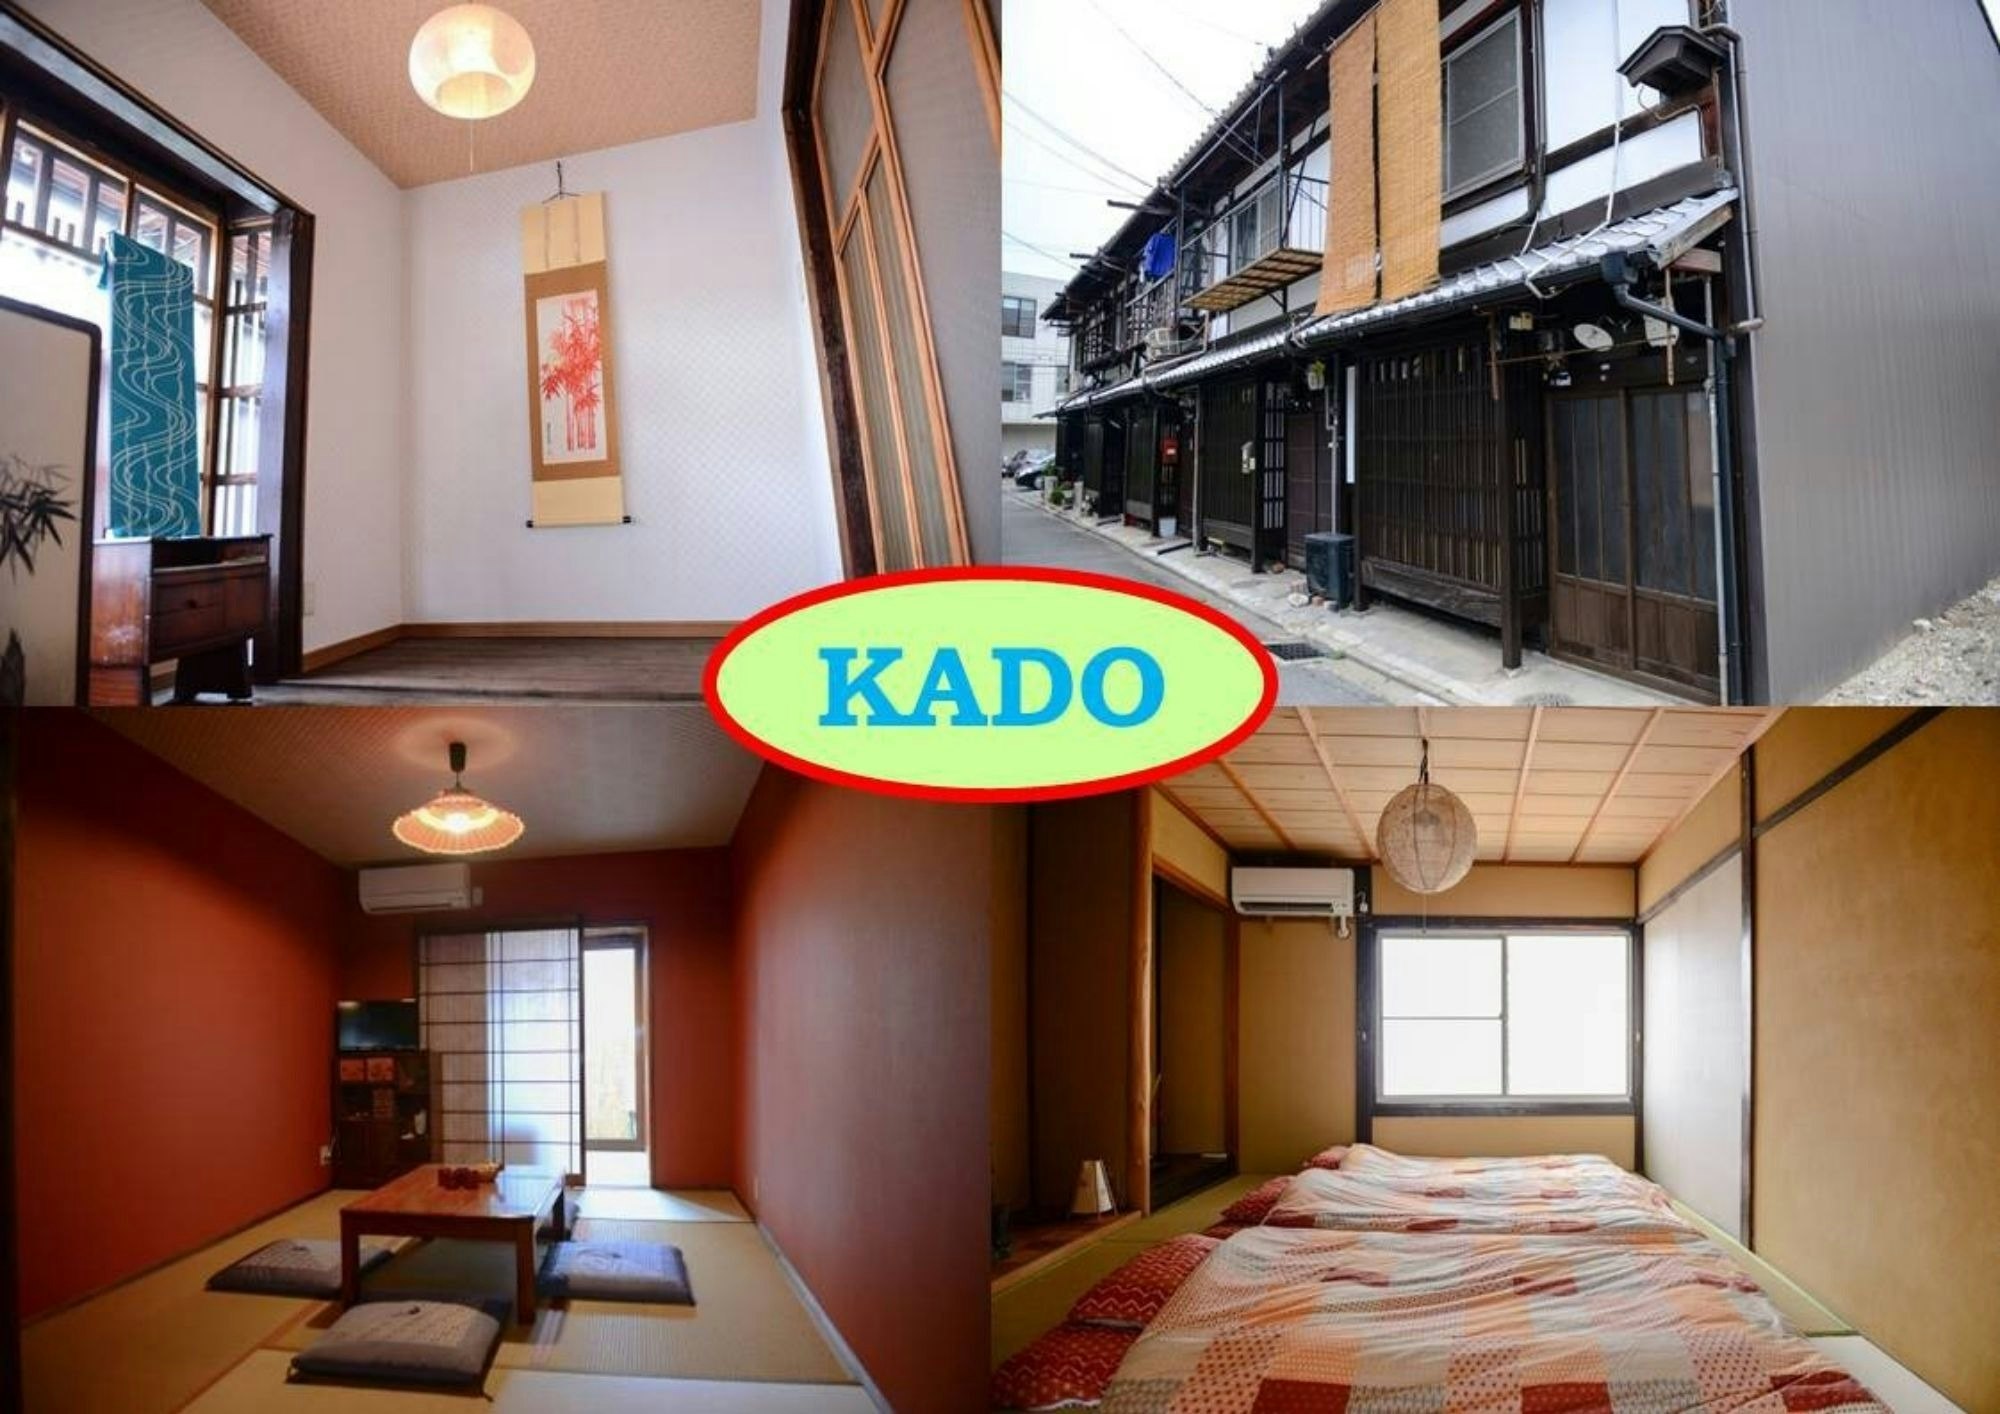 京都駅から1駅!西大路駅徒歩3分!観光名所へアクセス良好!和式のお家『KADO』/フリーWi-Fi